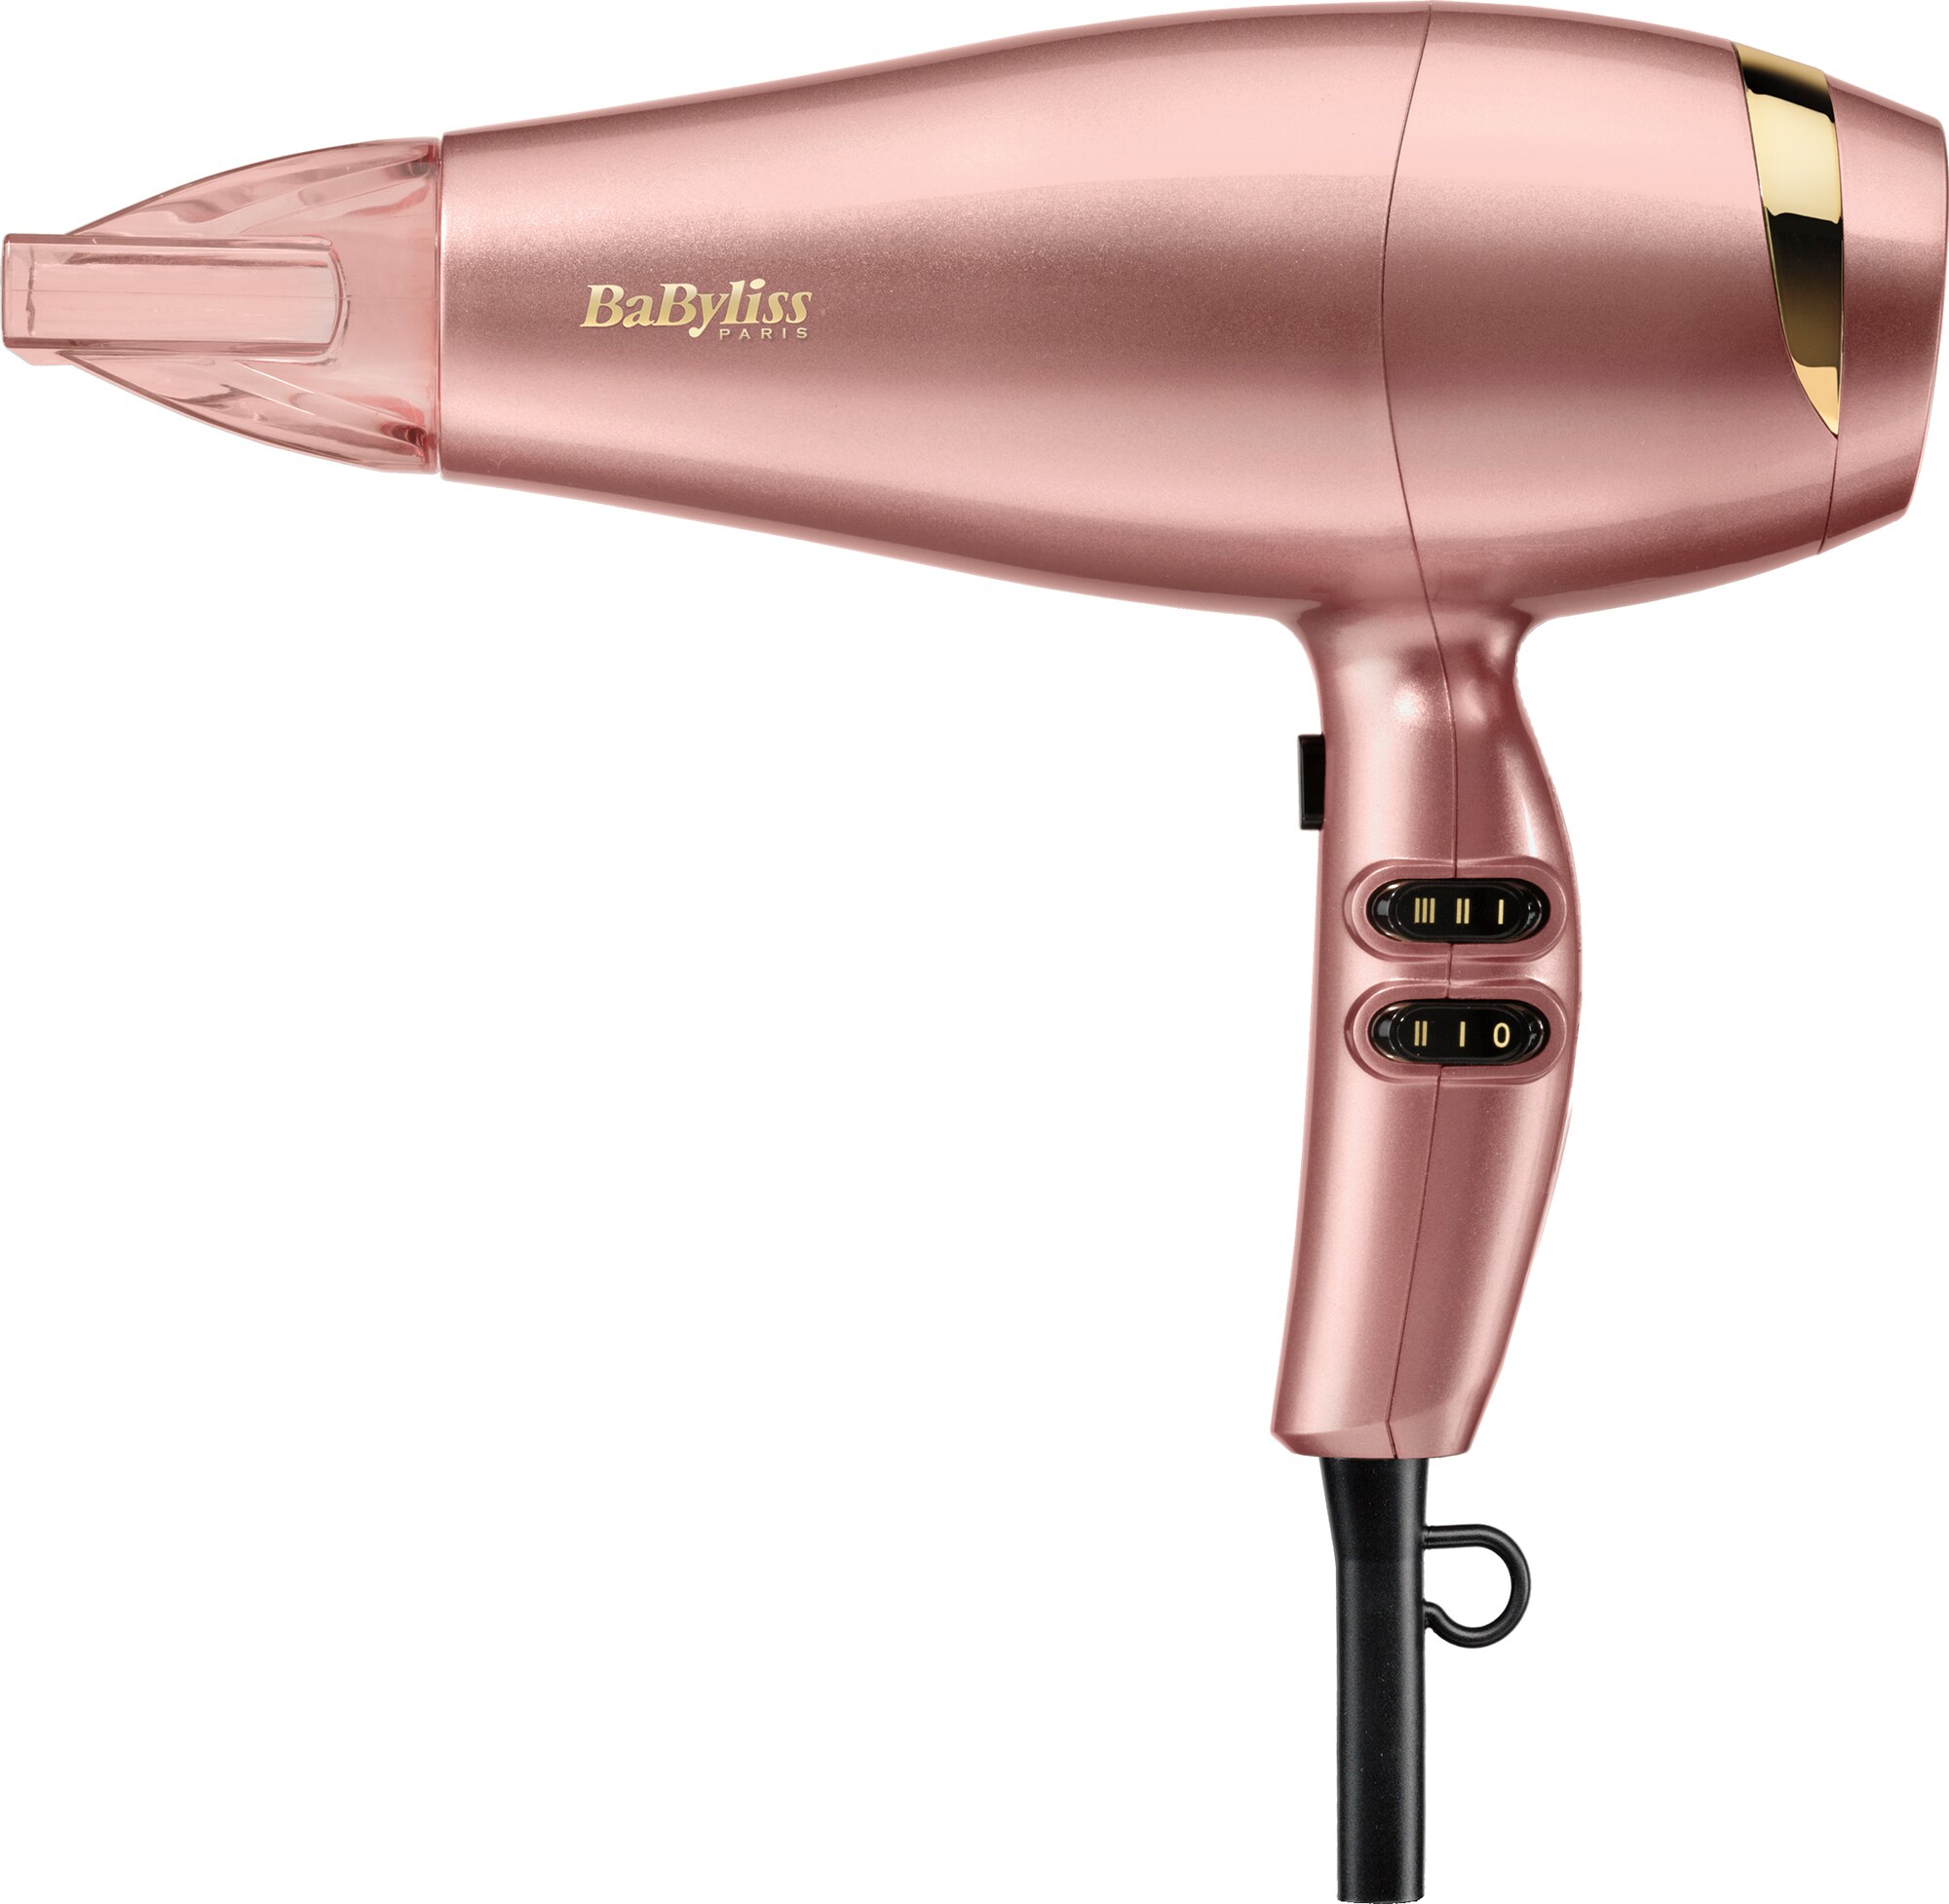 BaByliss Elegance hårtork 5336PE (rosa guld) - Hårfön - Elgiganten